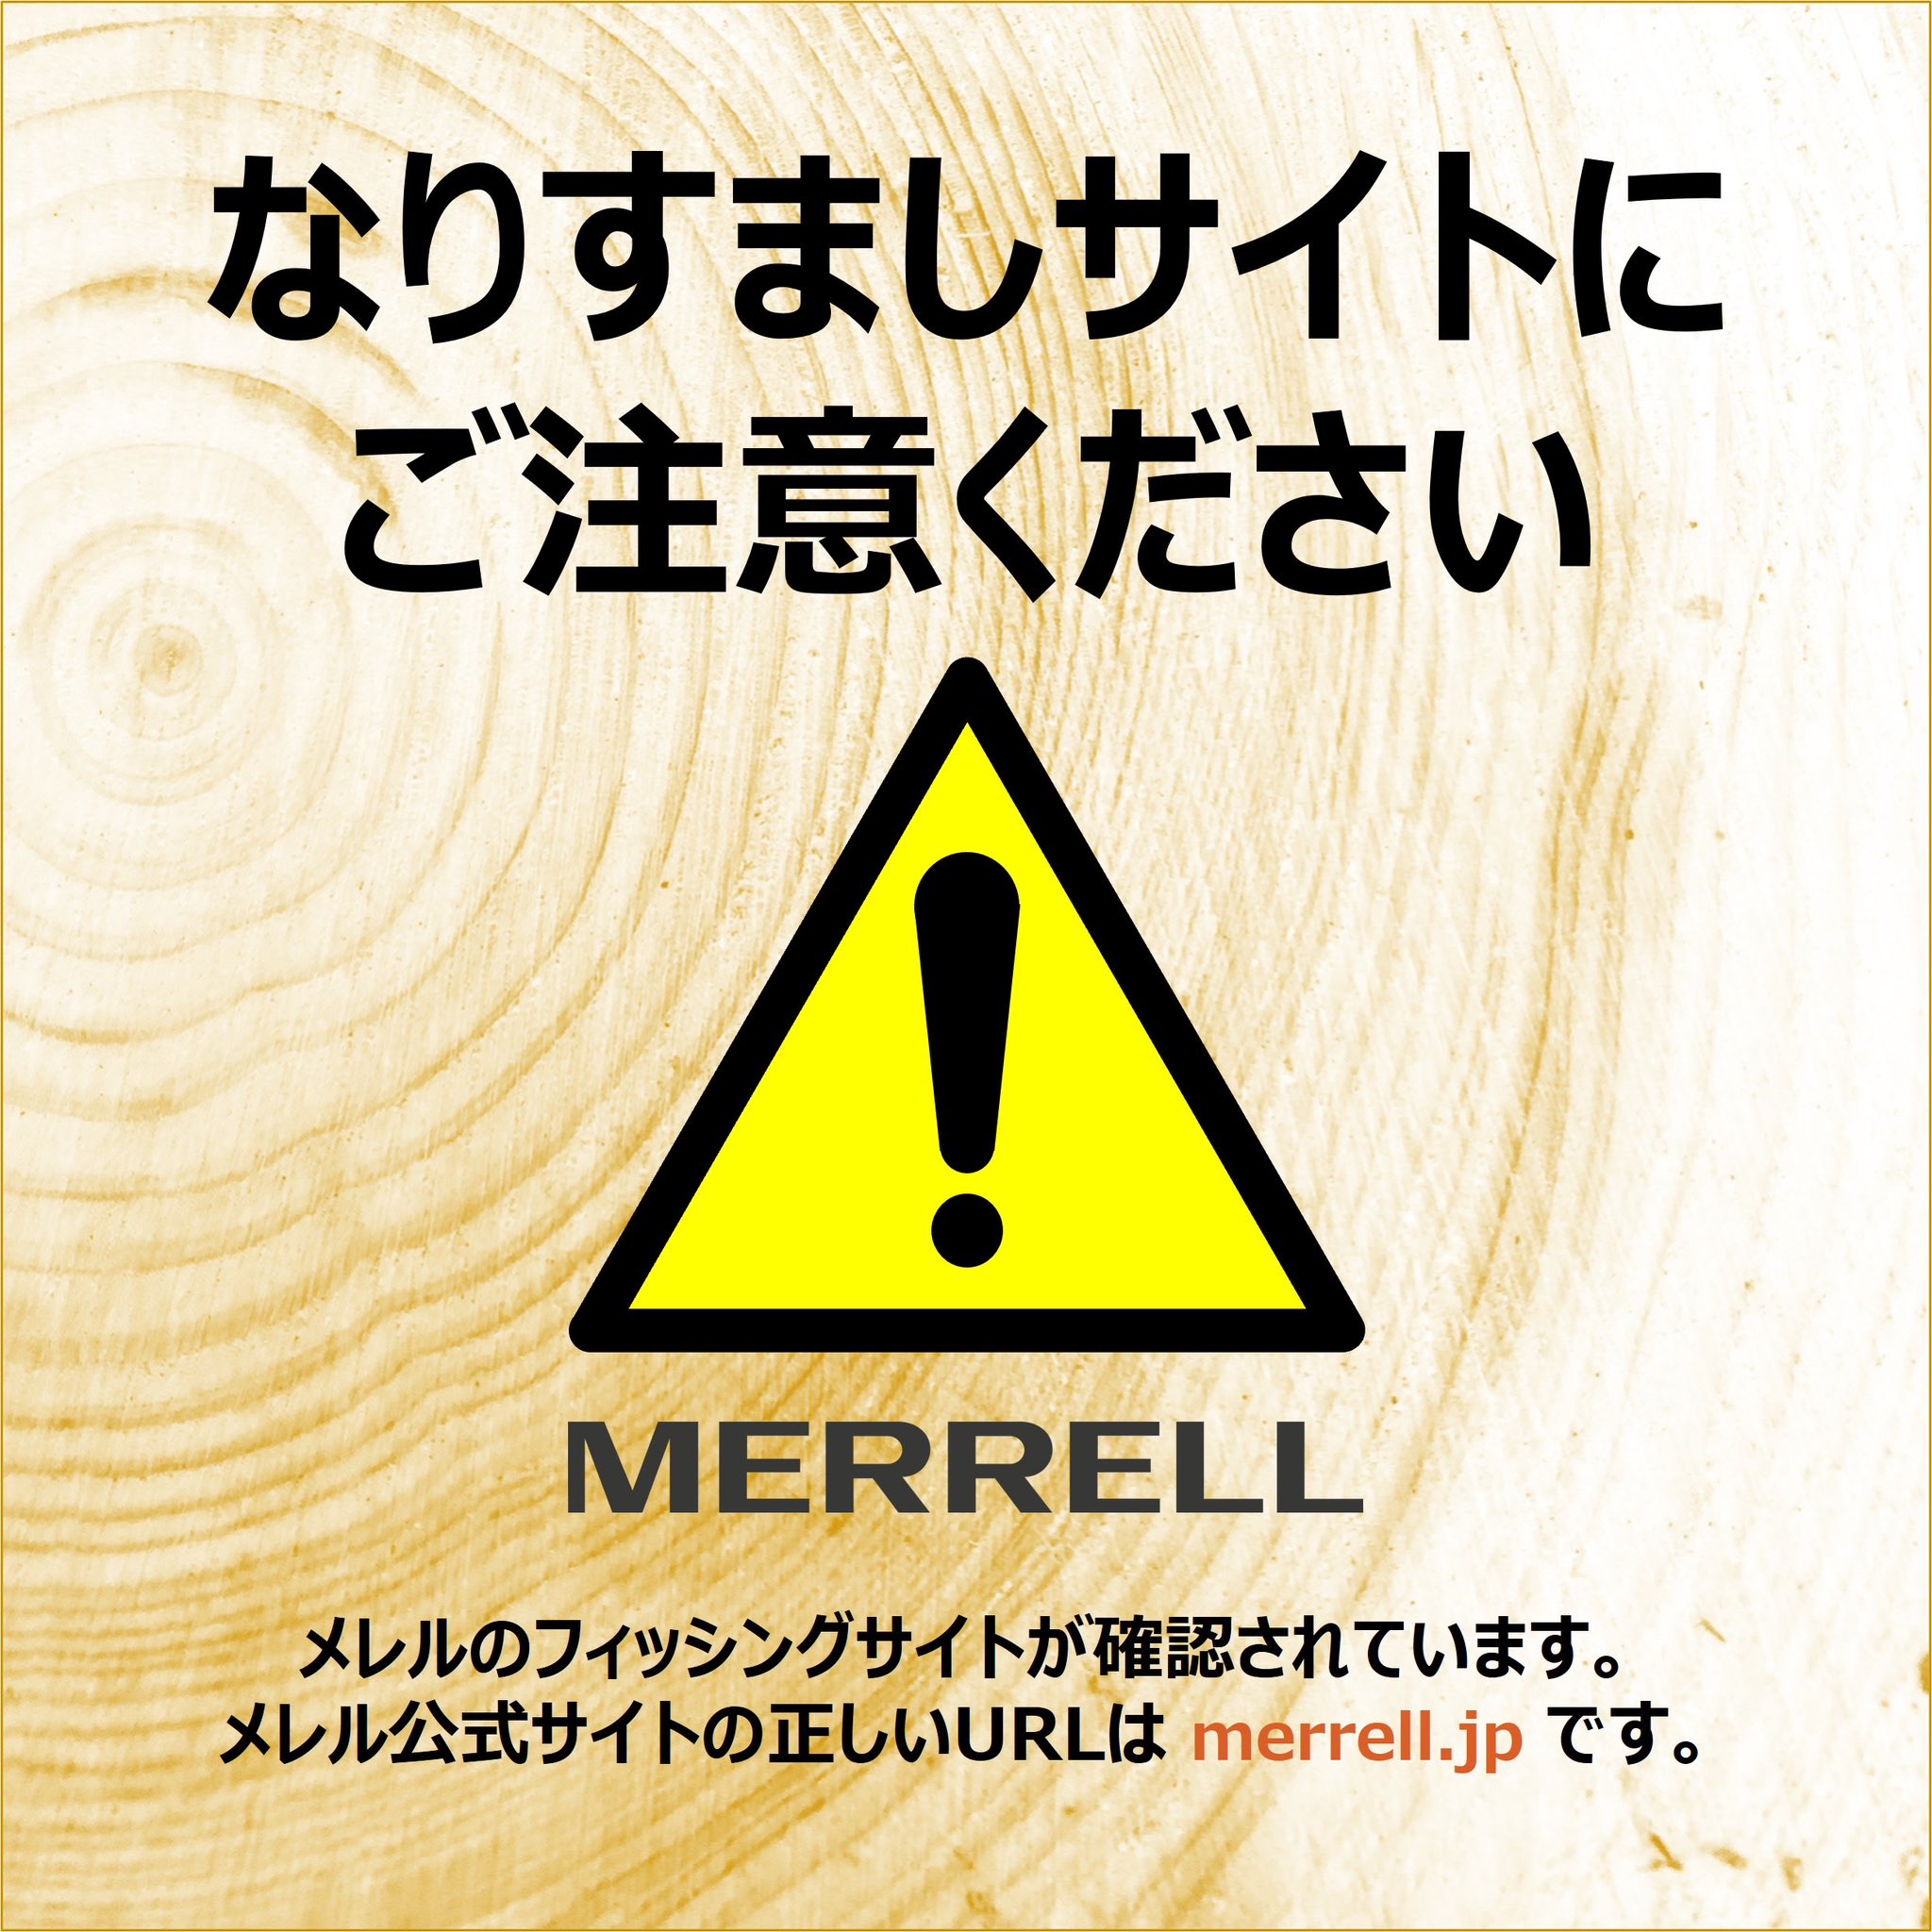 Merrell Japan (@Merrell_jp) / X